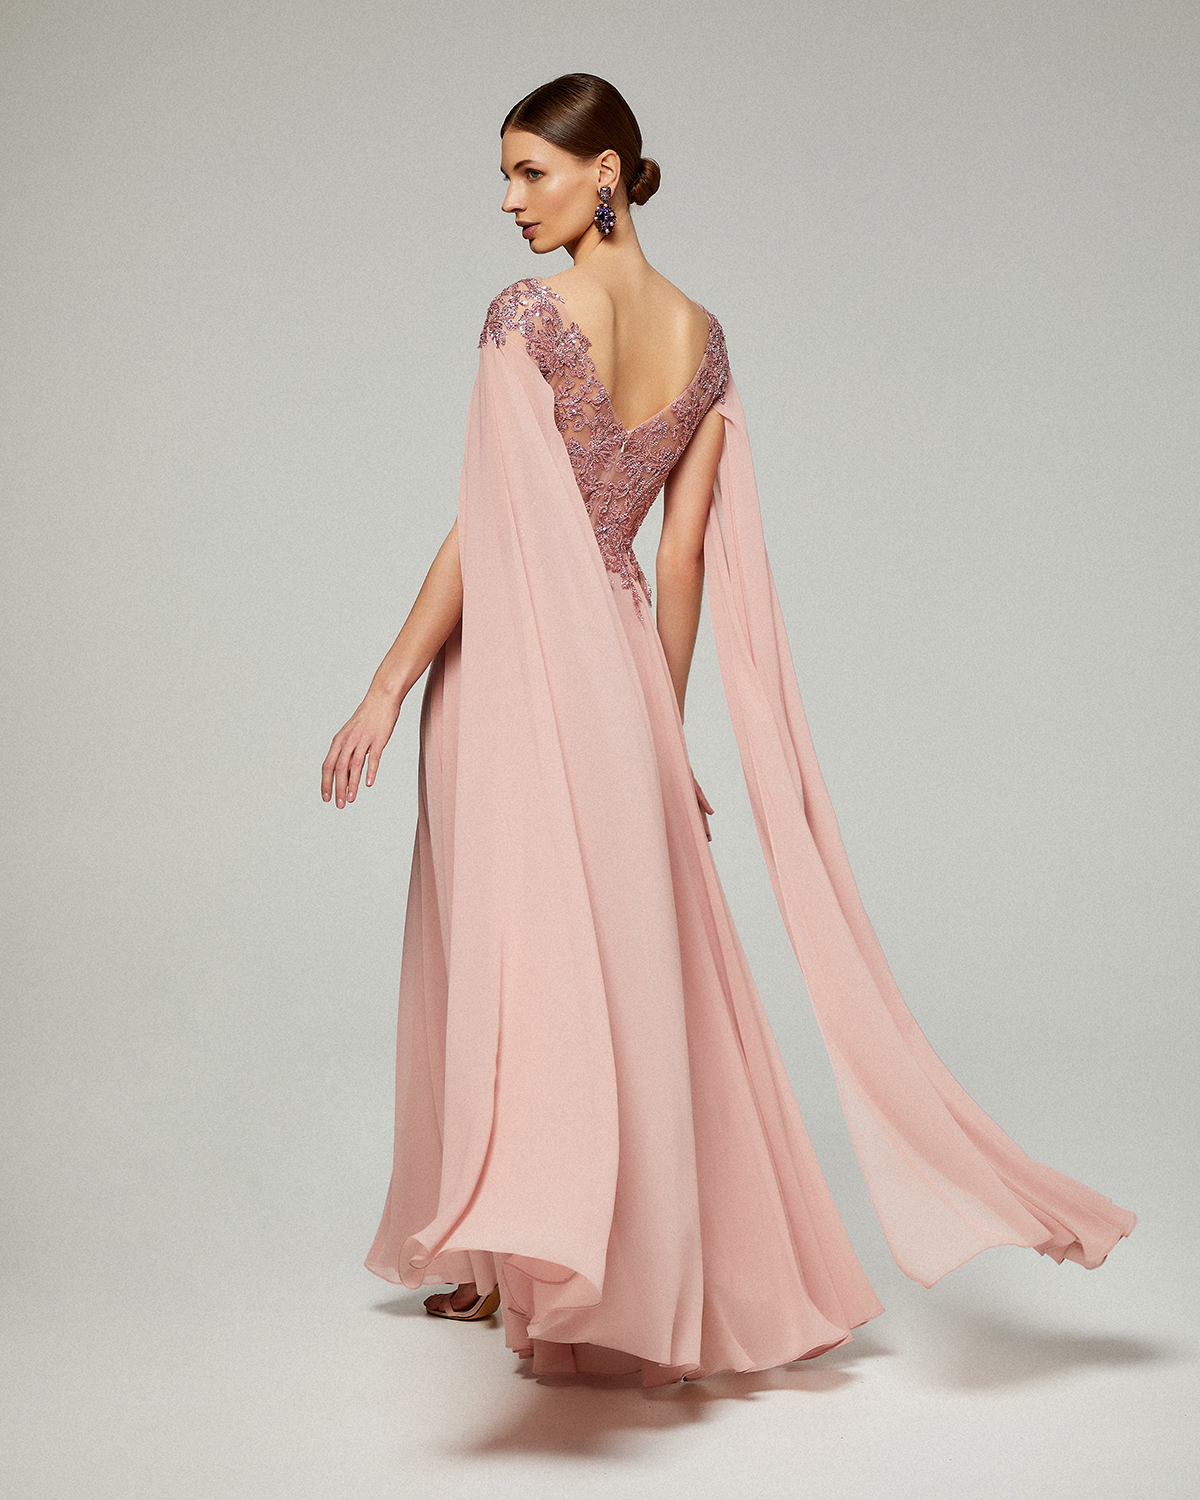 Κλασικό φόρεμα μακρύ  από μουσελίνα με ολοκέντητο δαντελένιο τοπ με μακριά μανίκια